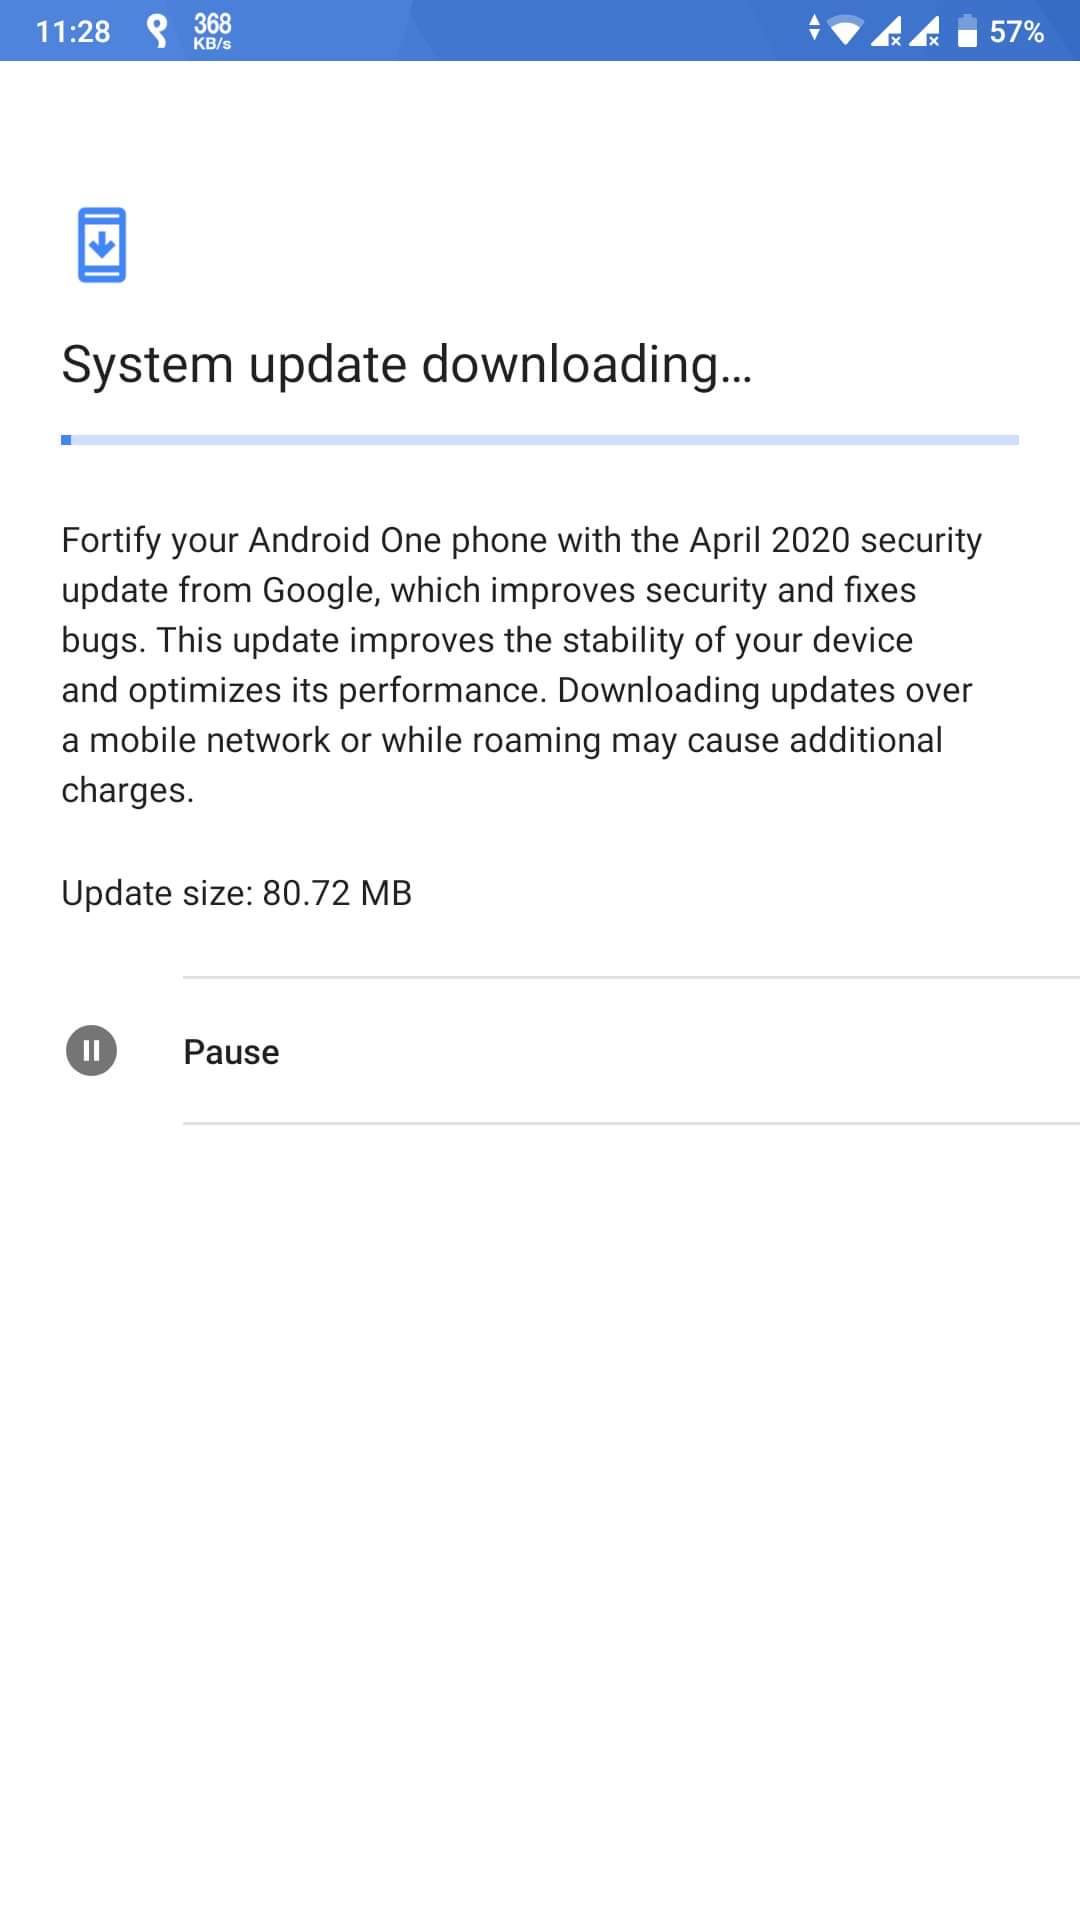 April security patch update for Xiaomi Mi A1 